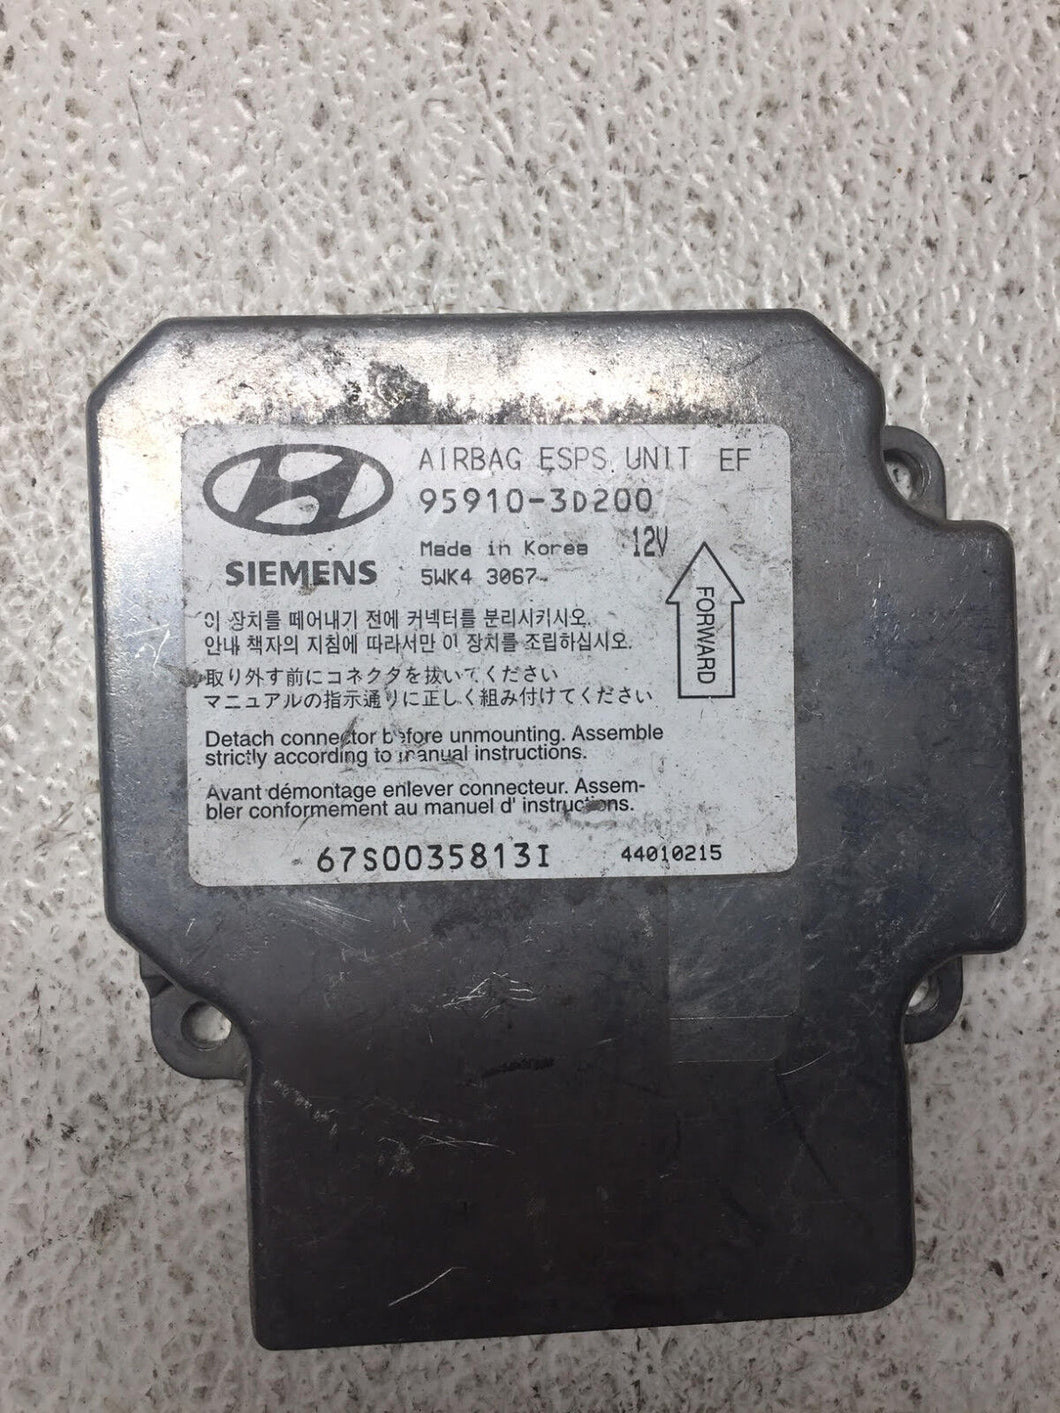 Hyundai Sonata AIRBAG CONTROL MODULE P/N 959103D200 (P)